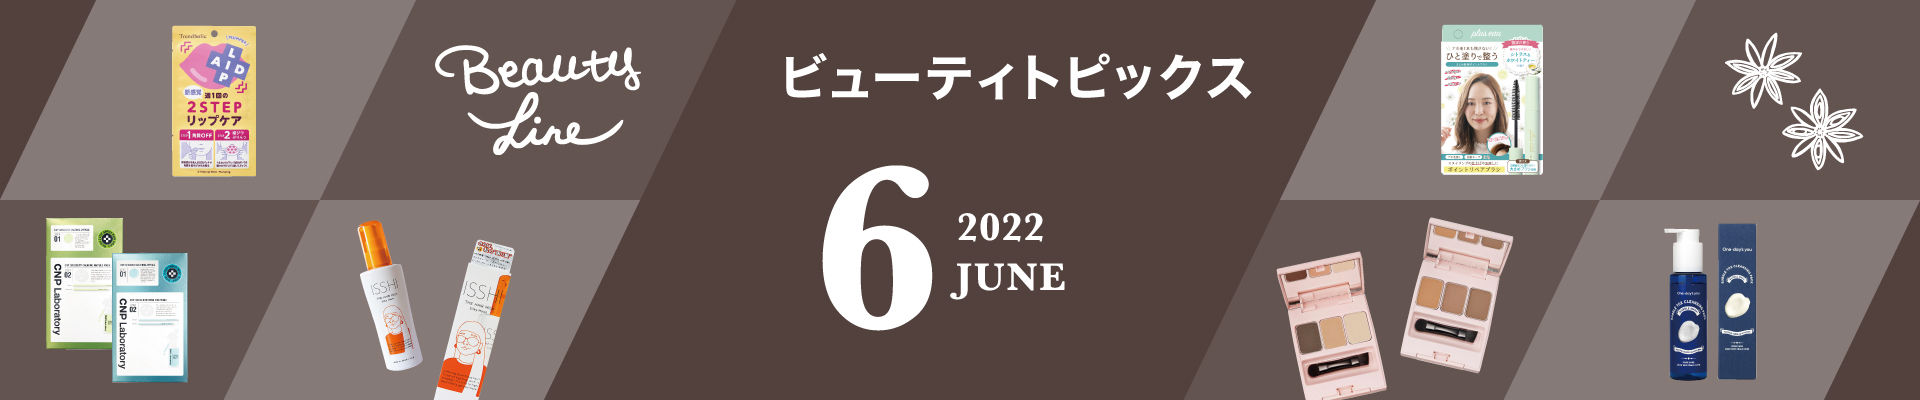 ビューティトピックス 06 2022. June